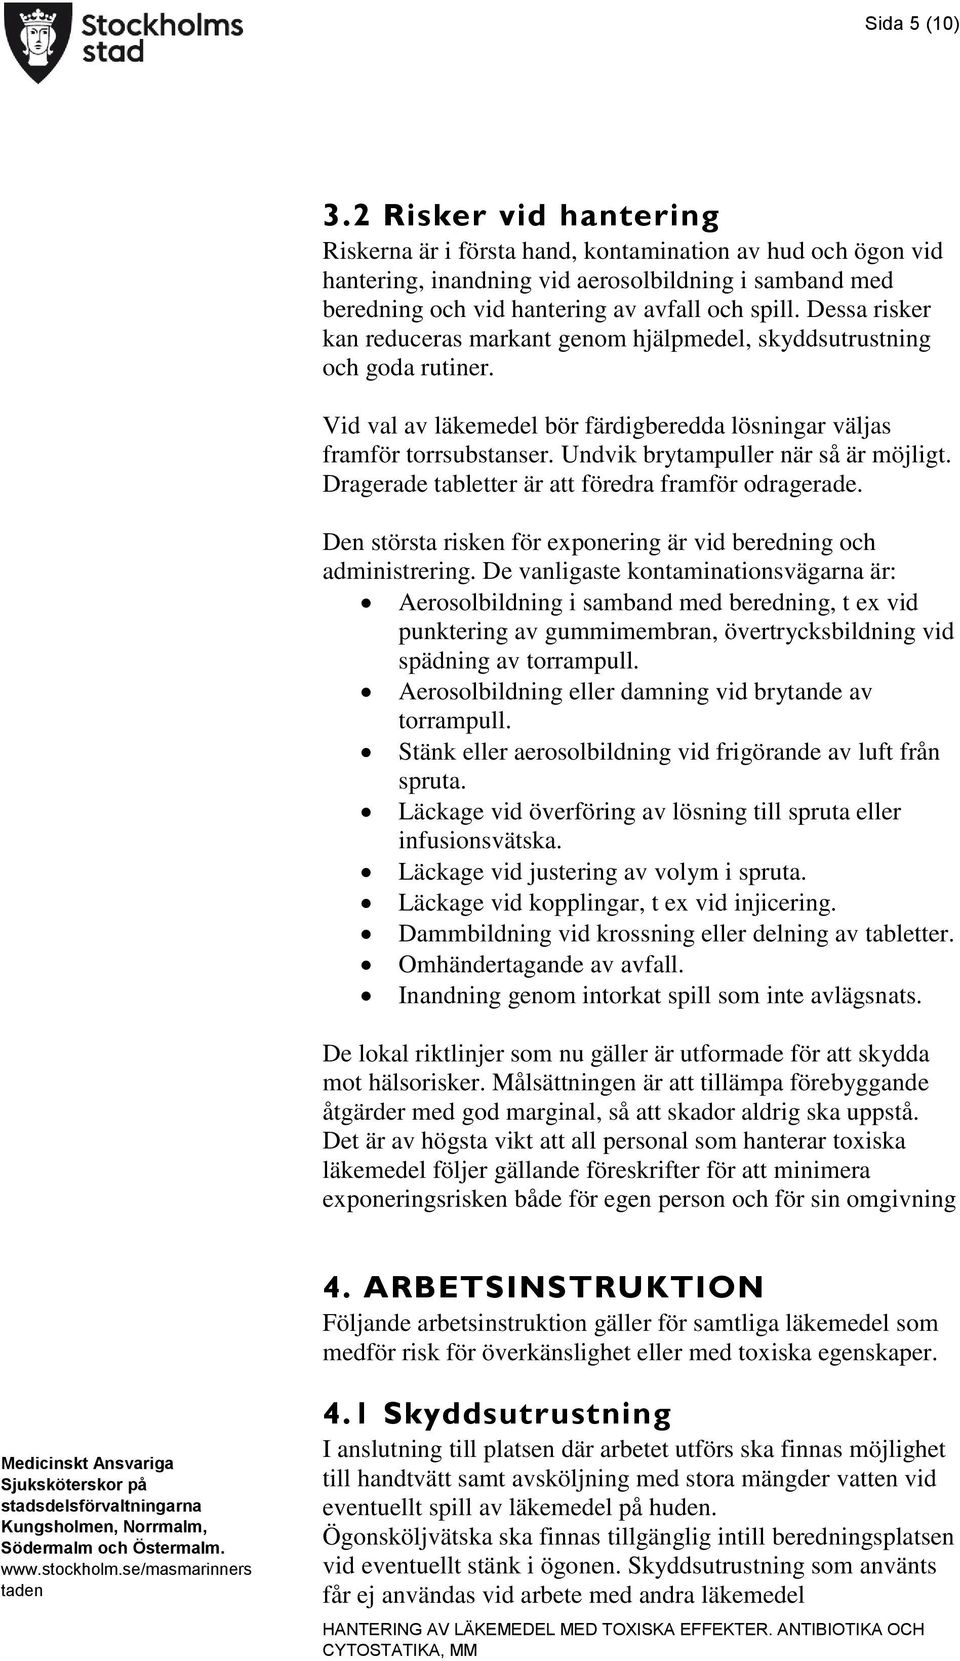 REGEL FÖR HÄLSO OCH SJUKVÅRD: HANTERING AV LÄKEMEDEL MED TOXISKA EFFEKTER.  ANTIBIOTIKA OCH CYTOSTATIKA, MM - PDF Free Download